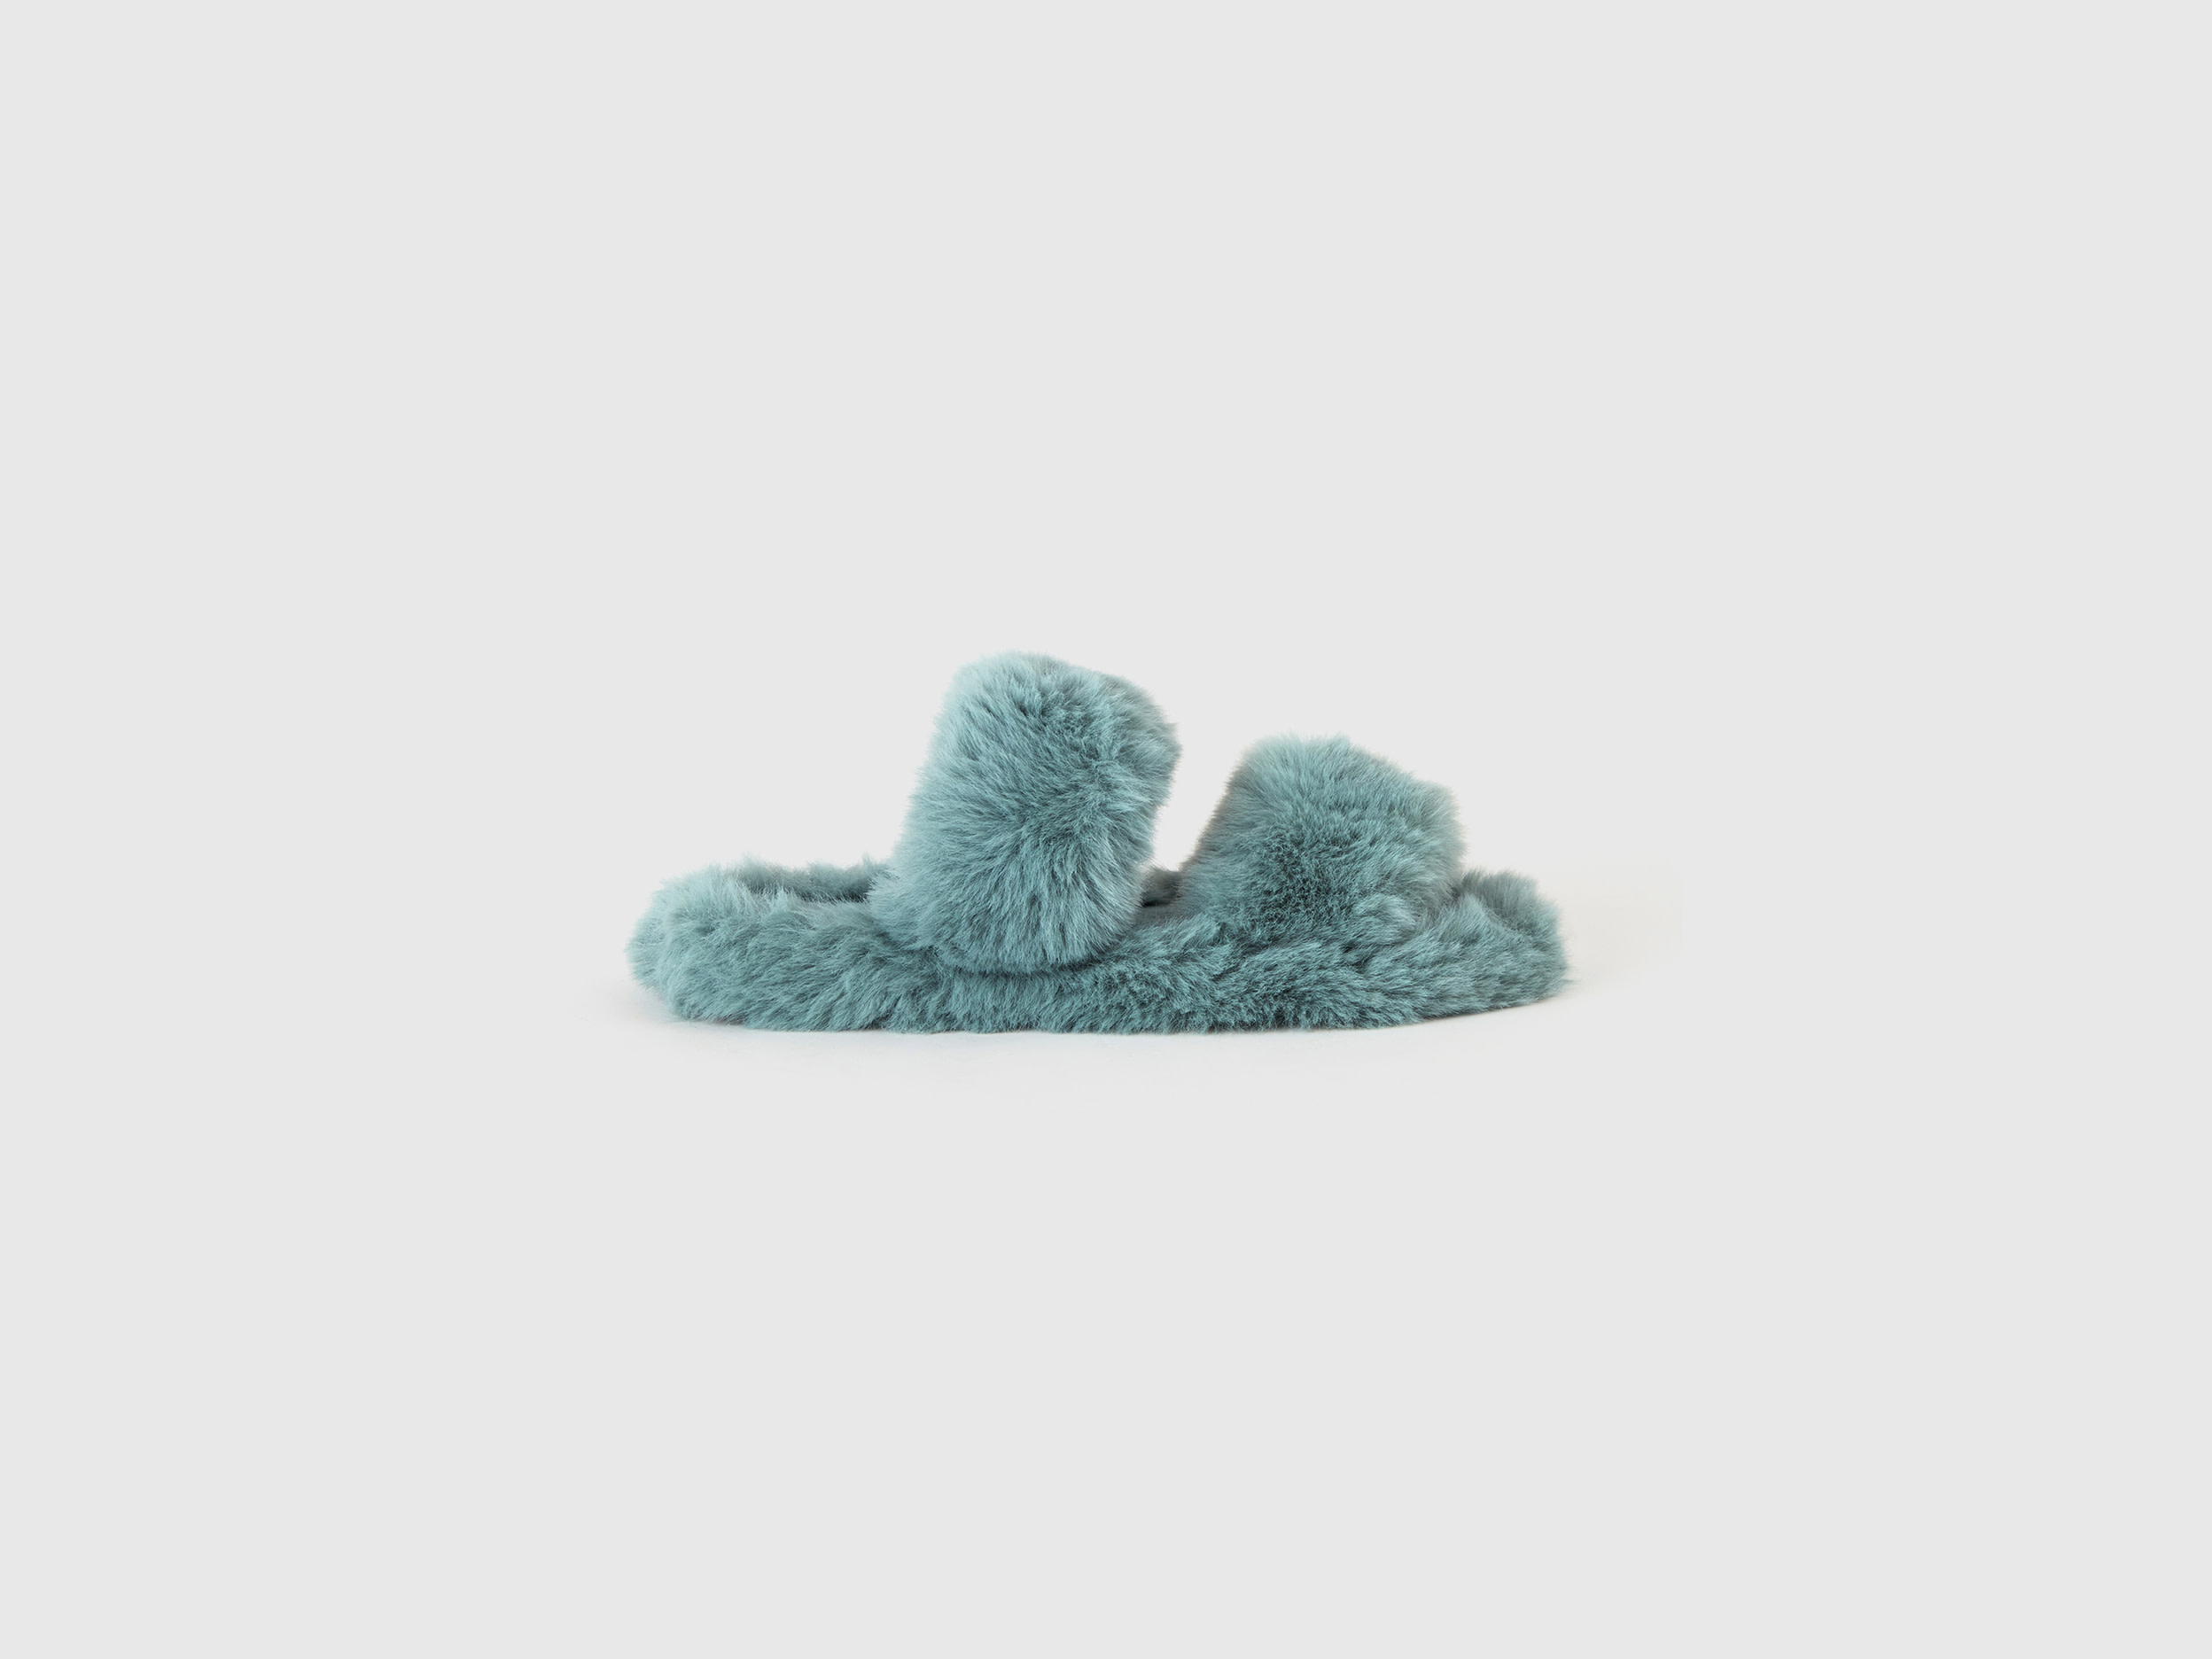 Benetton, Slippers In Faux Fur, size 4,5, Aqua, Women